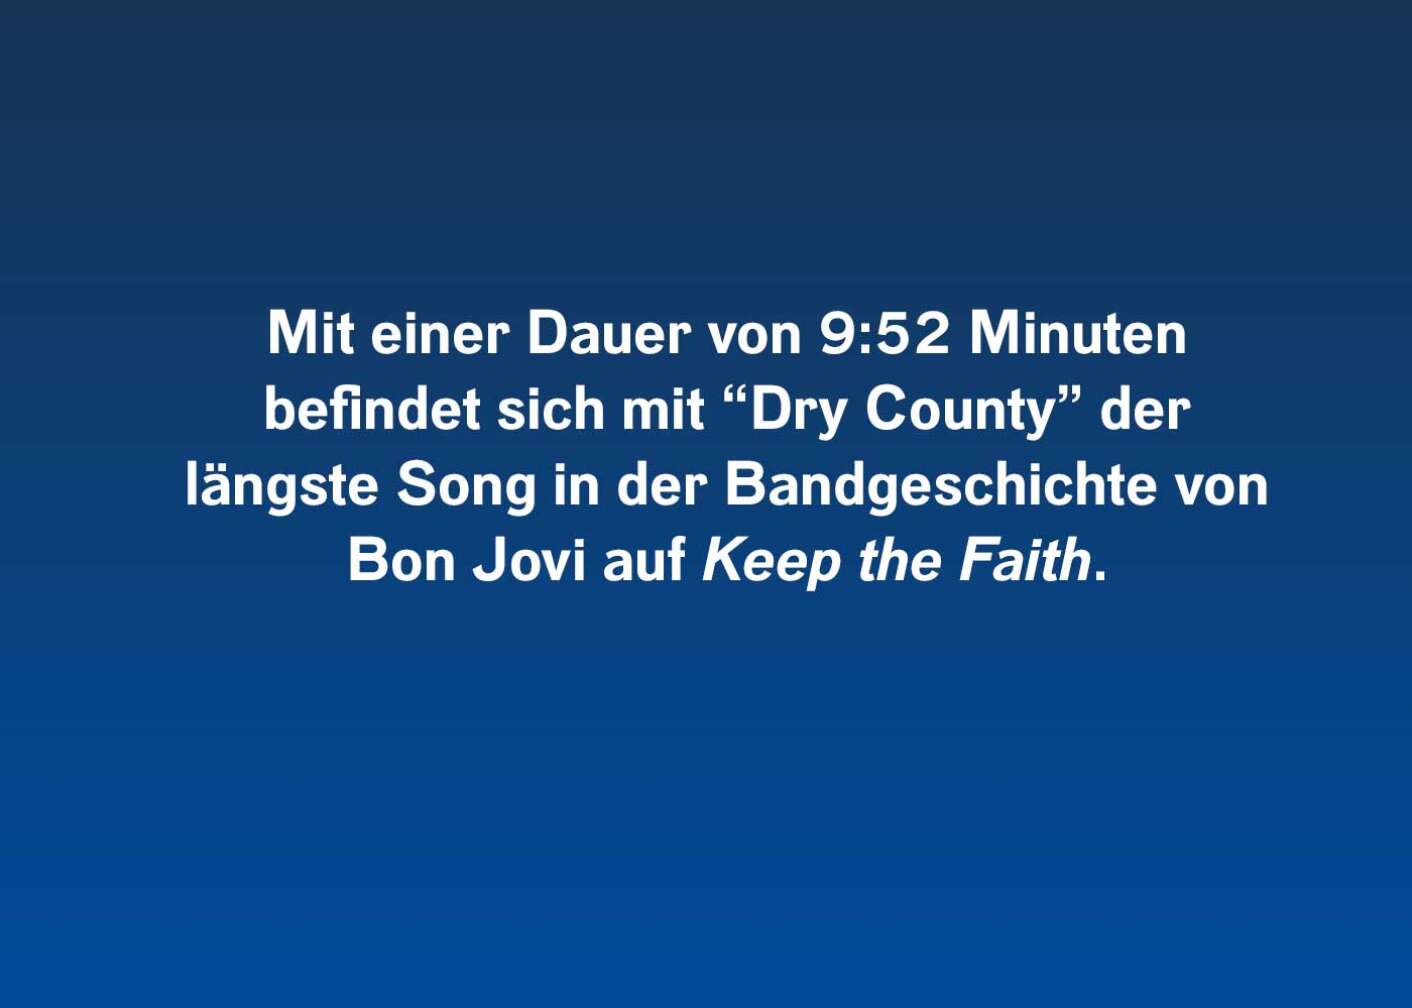 Fakt über Keep The Faith von Bon Jovi als Fließtext